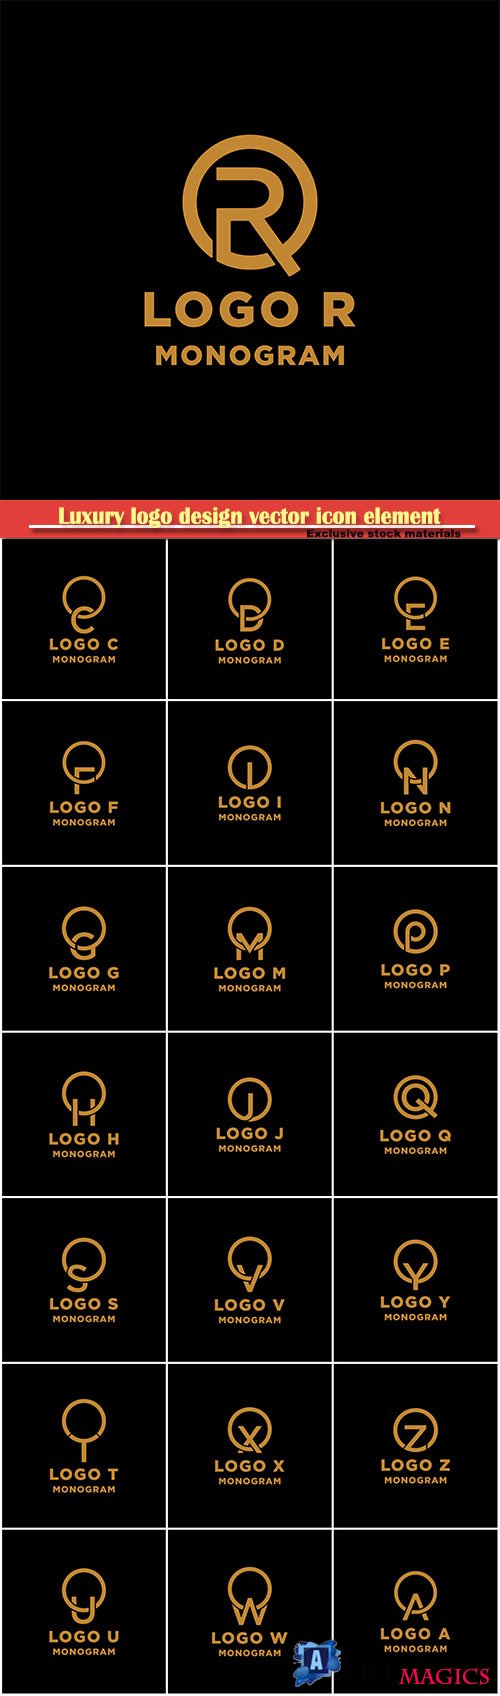 Luxury logo design vector icon element